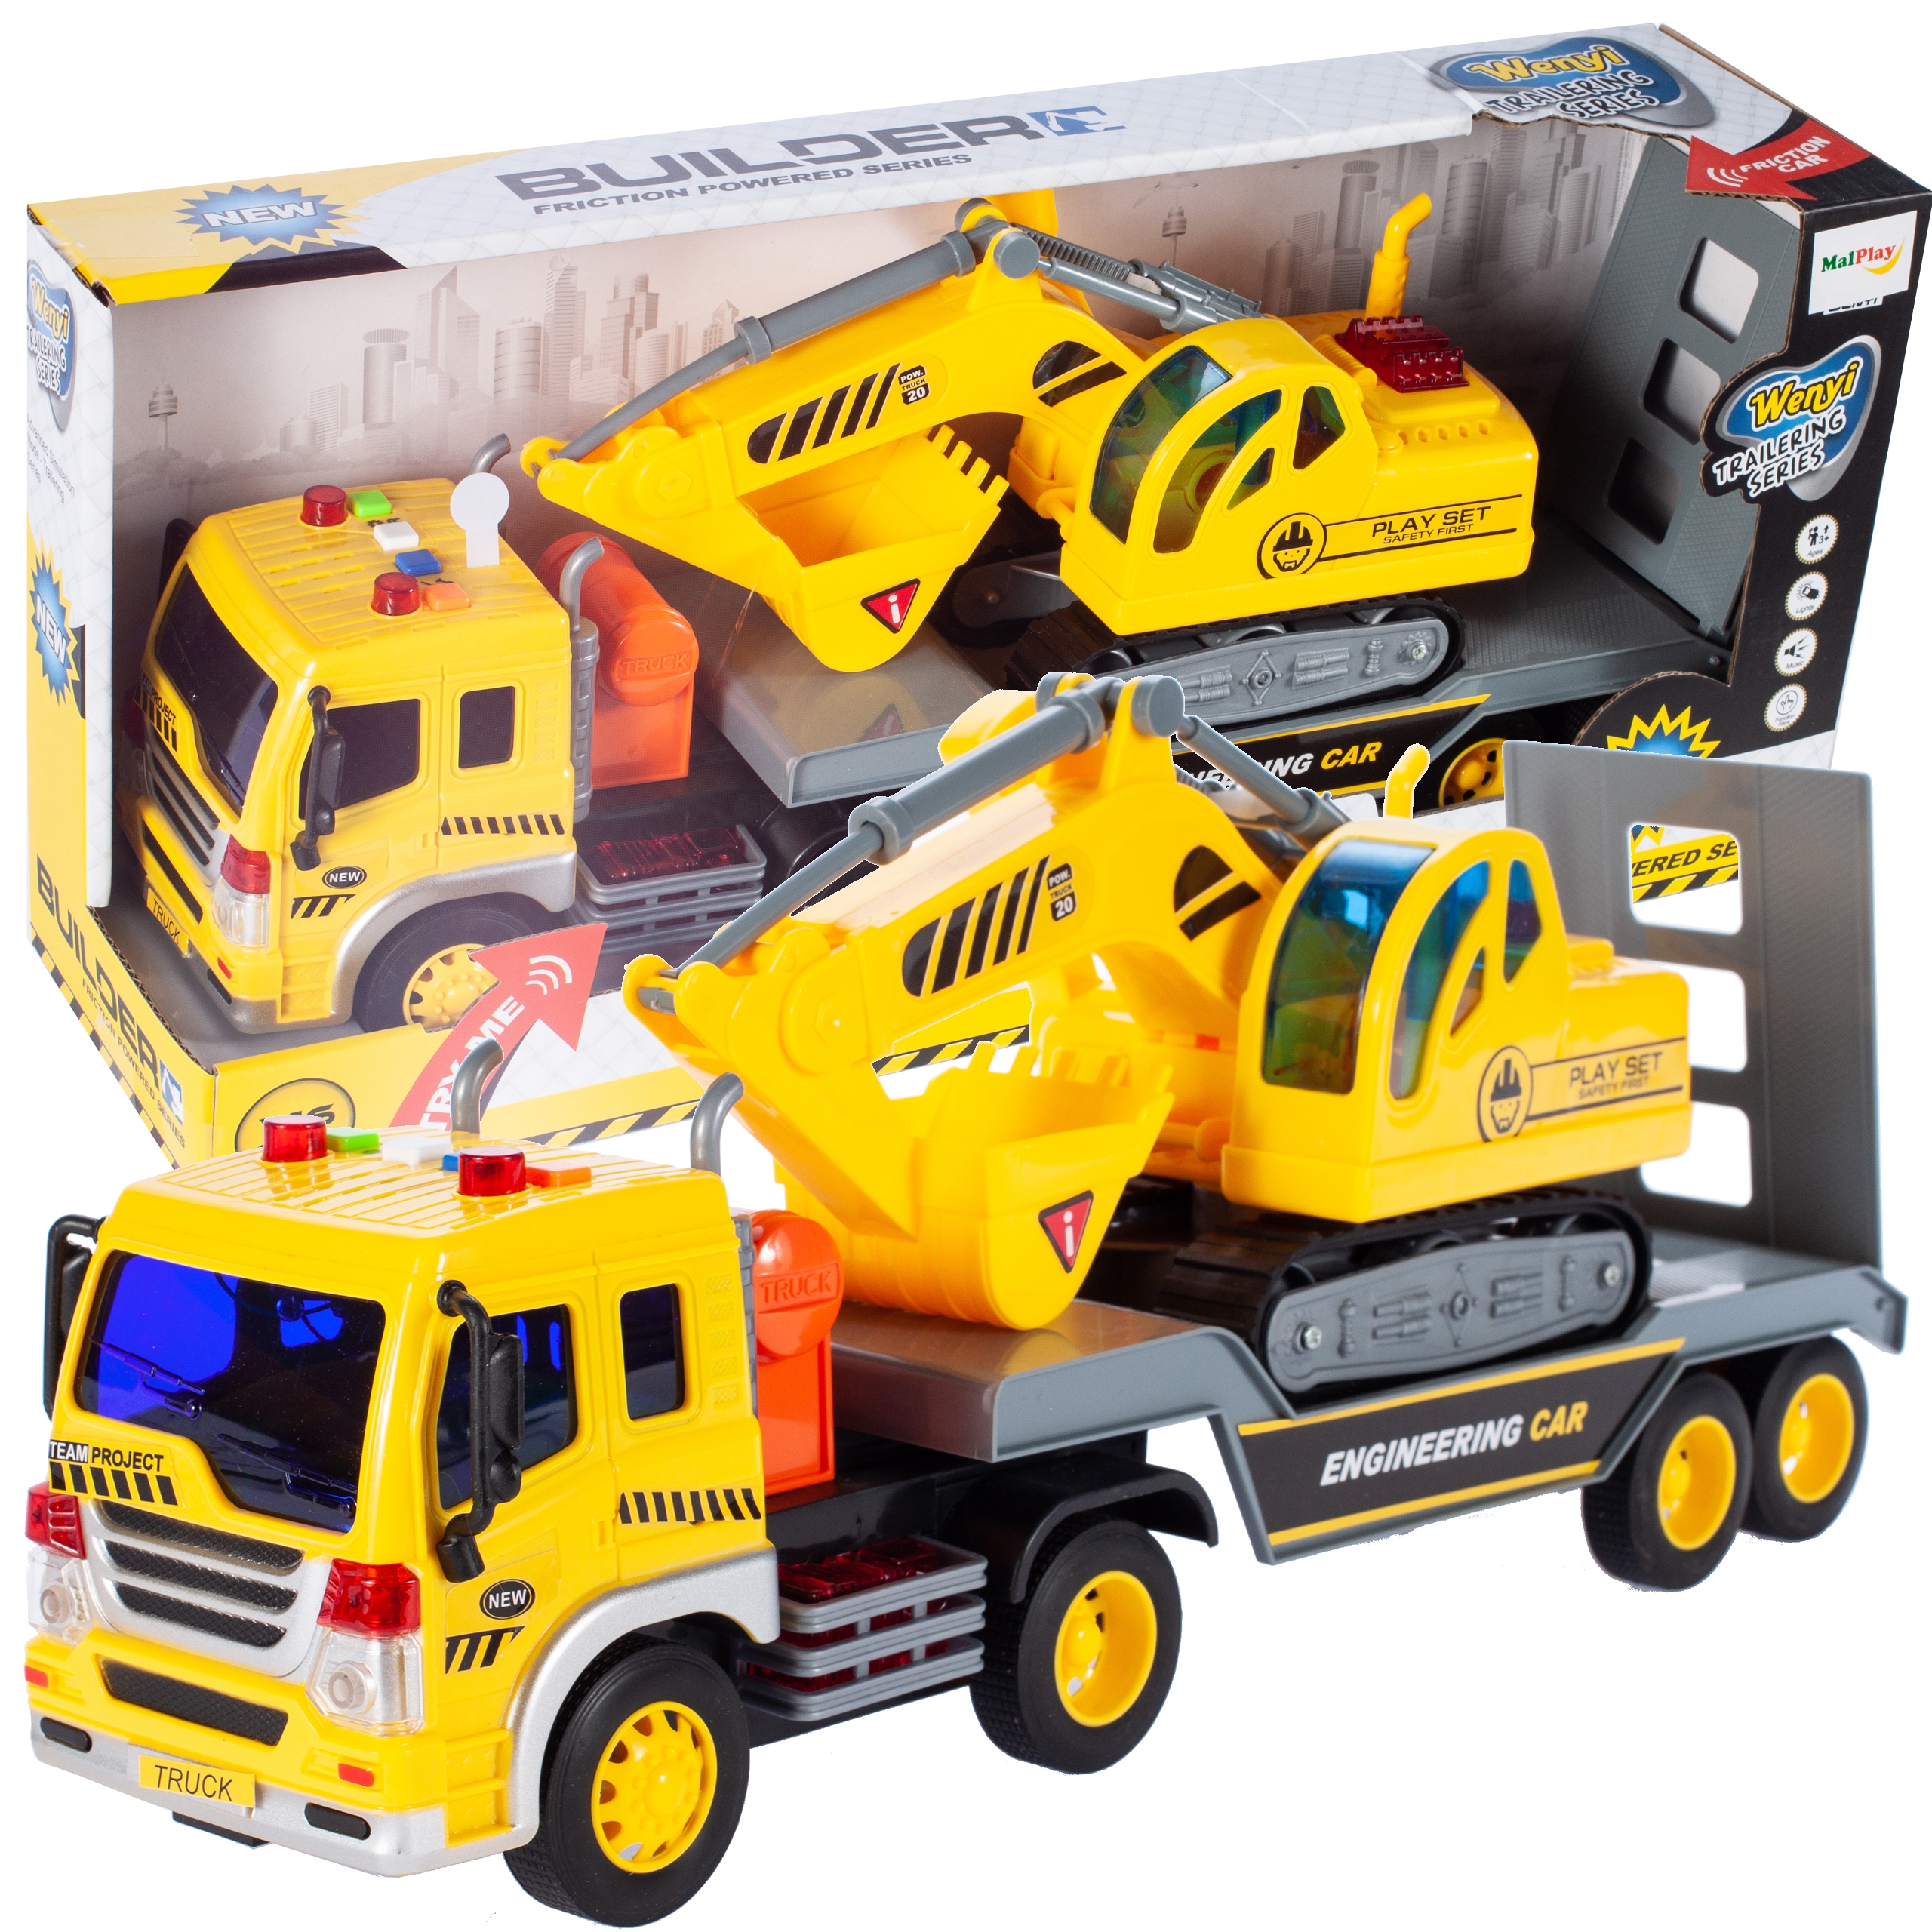 6 Teile Kinder Spielzeug Bagger LKW Fahrzeug Baufahrzeug Spielzeugauto Fahrzeug 